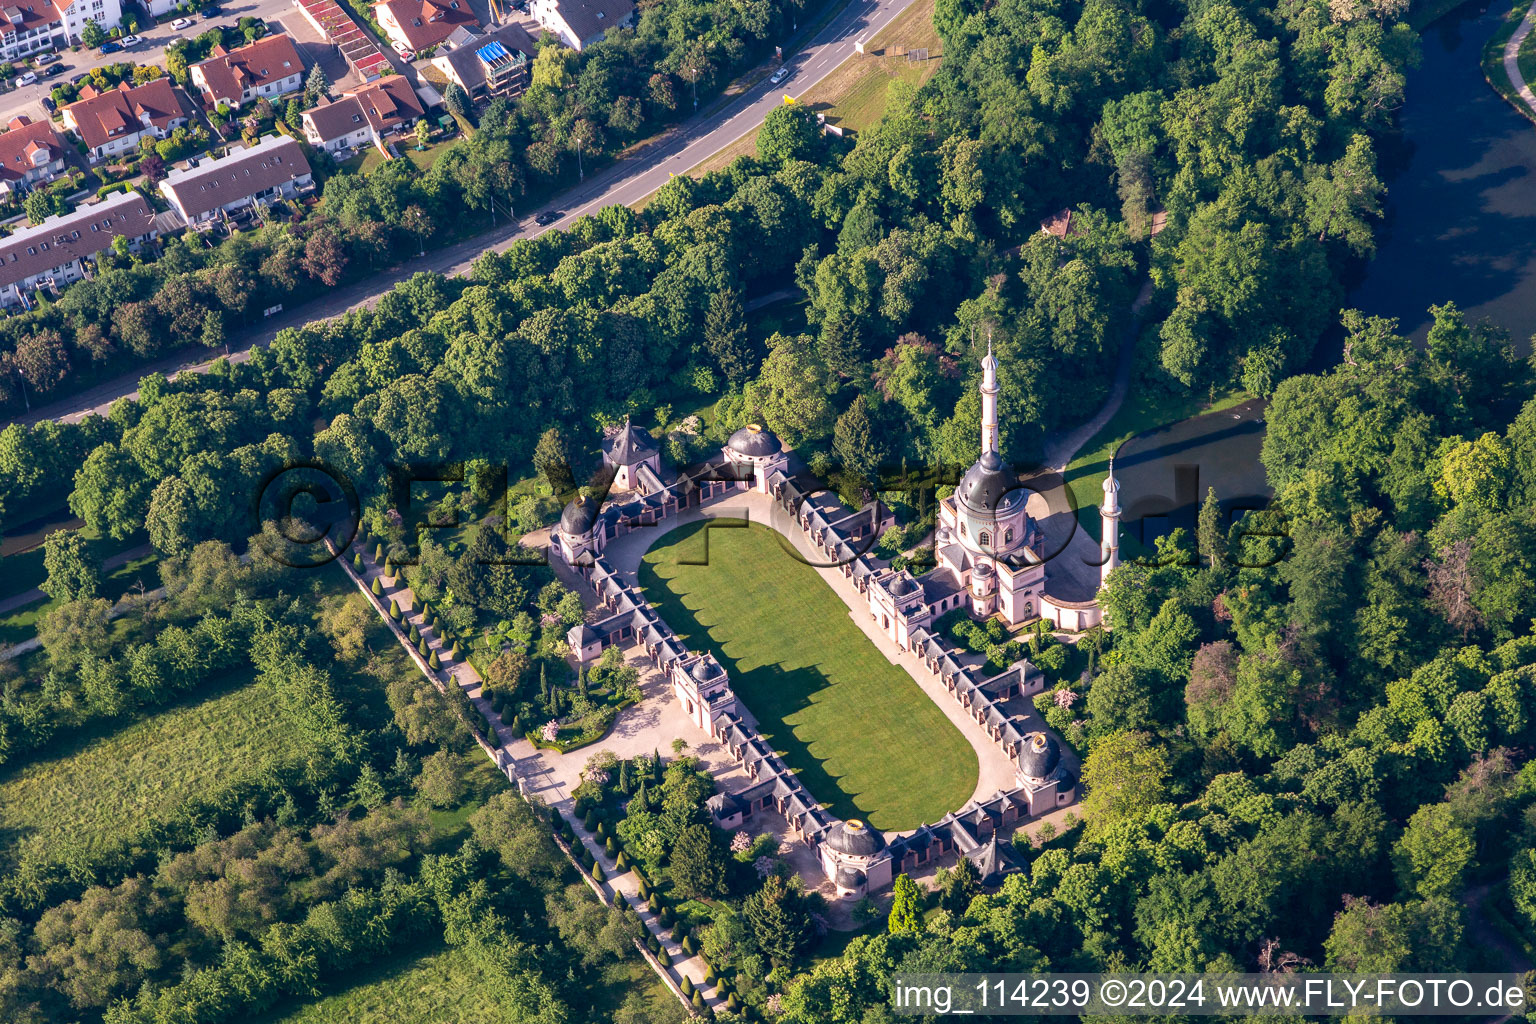 Luftaufnahme von Blick auf das Schloss Schwetzingen und den französische Barockgarten in Schwetzingen. Das Schloss diente den pfälzischen Kurfürsten als Sommerresidenz und wurde in seiner heutigen Form ab dem Jahr 1697 errichtet im Bundesland Baden-Württemberg, Deutschland